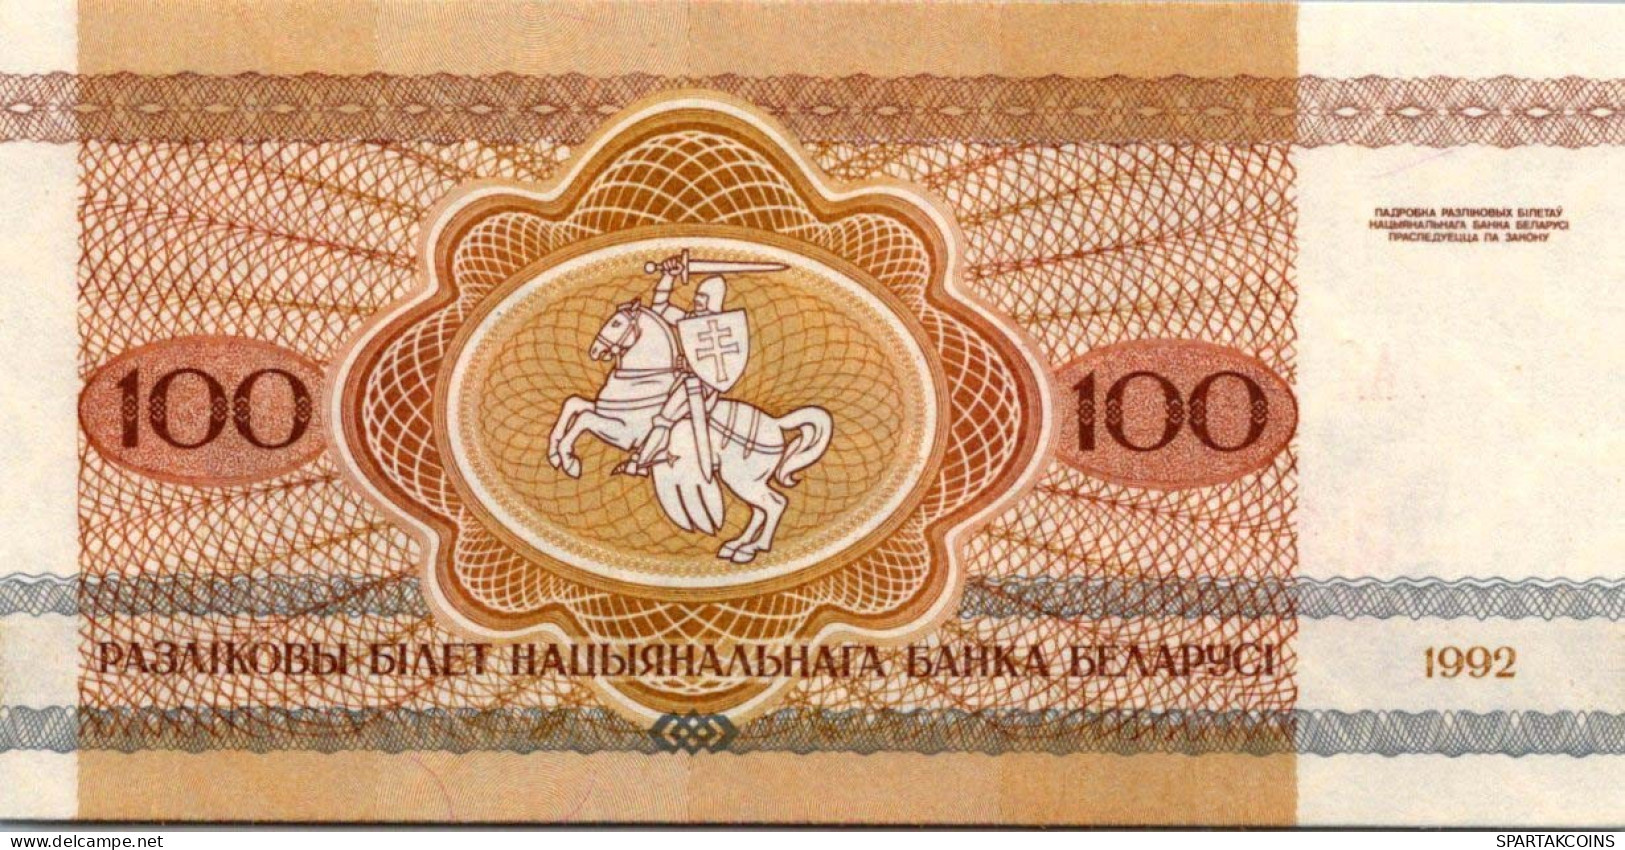 100 RUBLES 1992 BELARUS Papiergeld Banknote #PJ283 - [11] Lokale Uitgaven